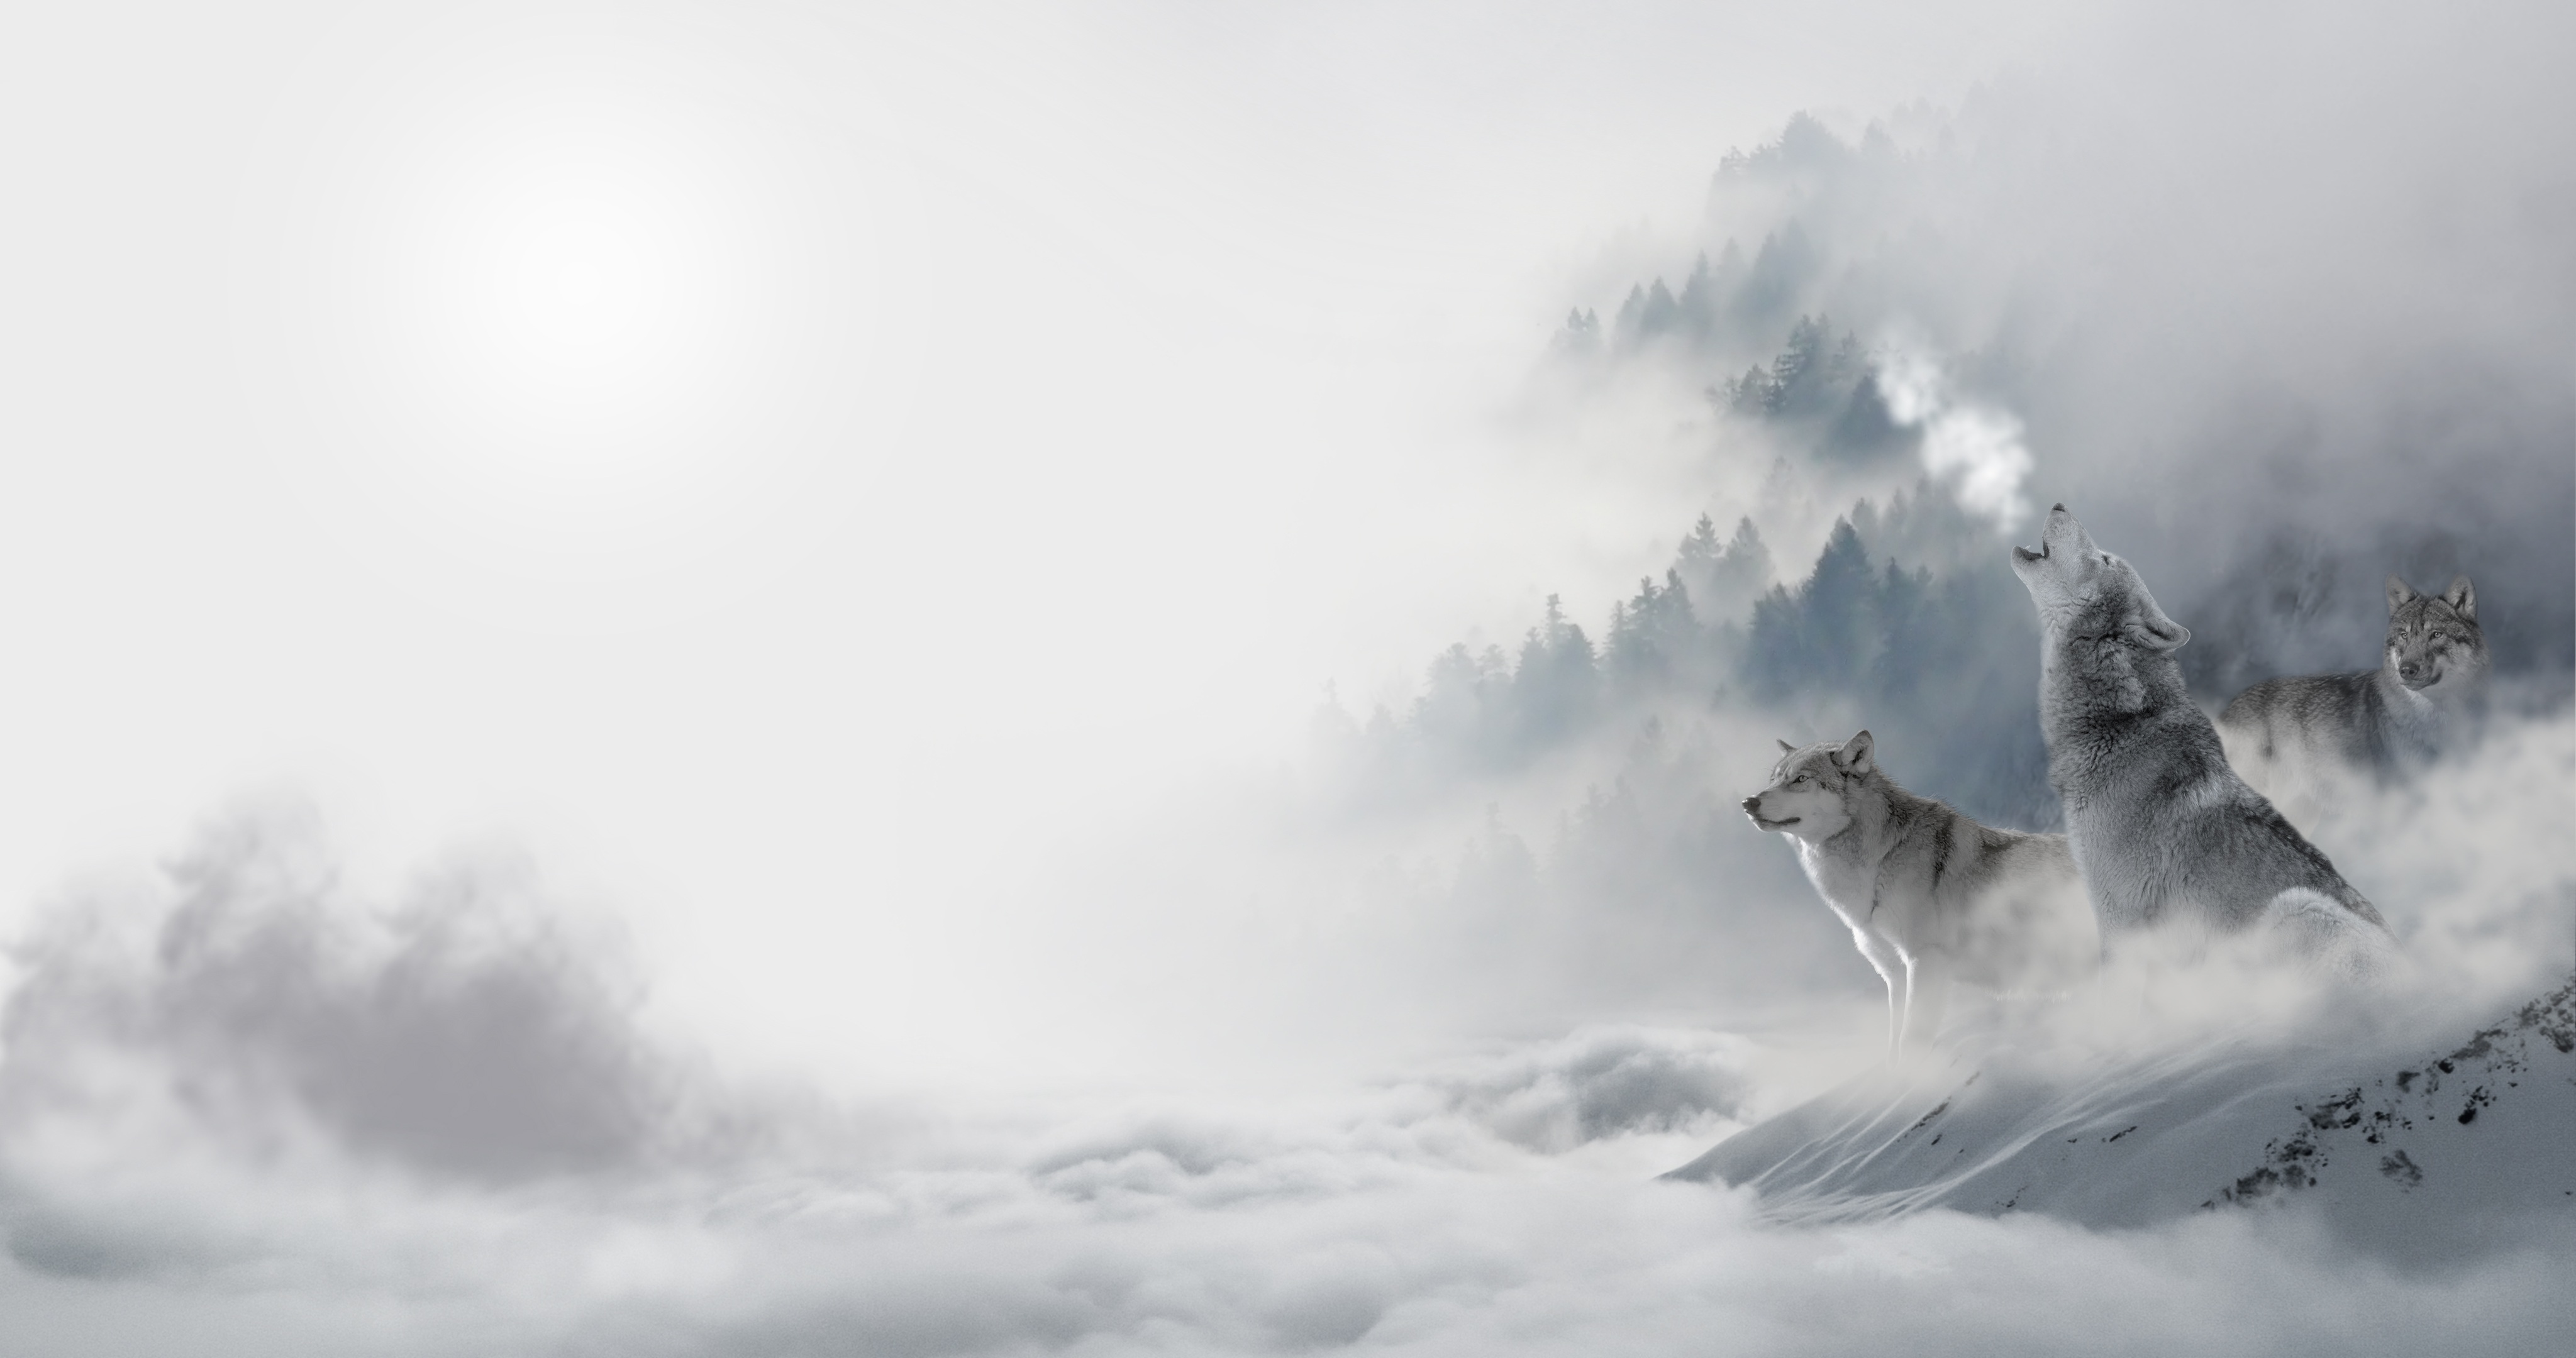 Sói tinh thần với những khoảnh khắc huyền ảo và đầy tính nghệ thuật sẽ khiến bạn say đắm. Đến với ảnh sói để khám phá thế giới đầy ẩn ý và sức mạnh của loài động vật này.